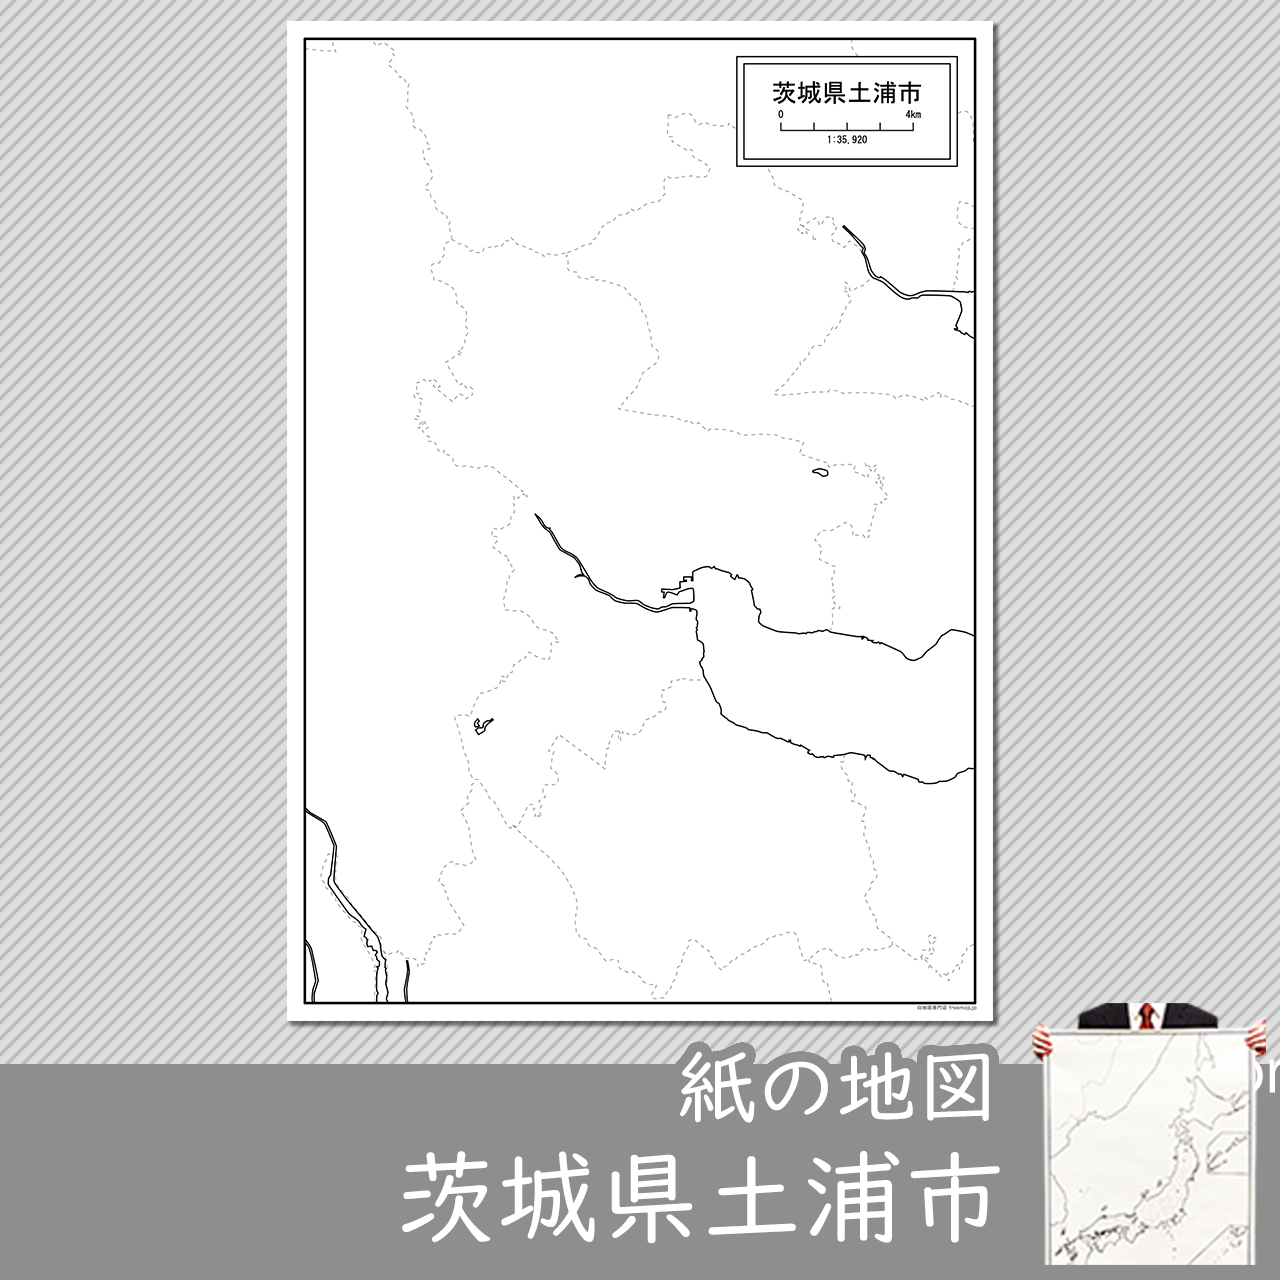 土浦市の紙の白地図のサムネイル